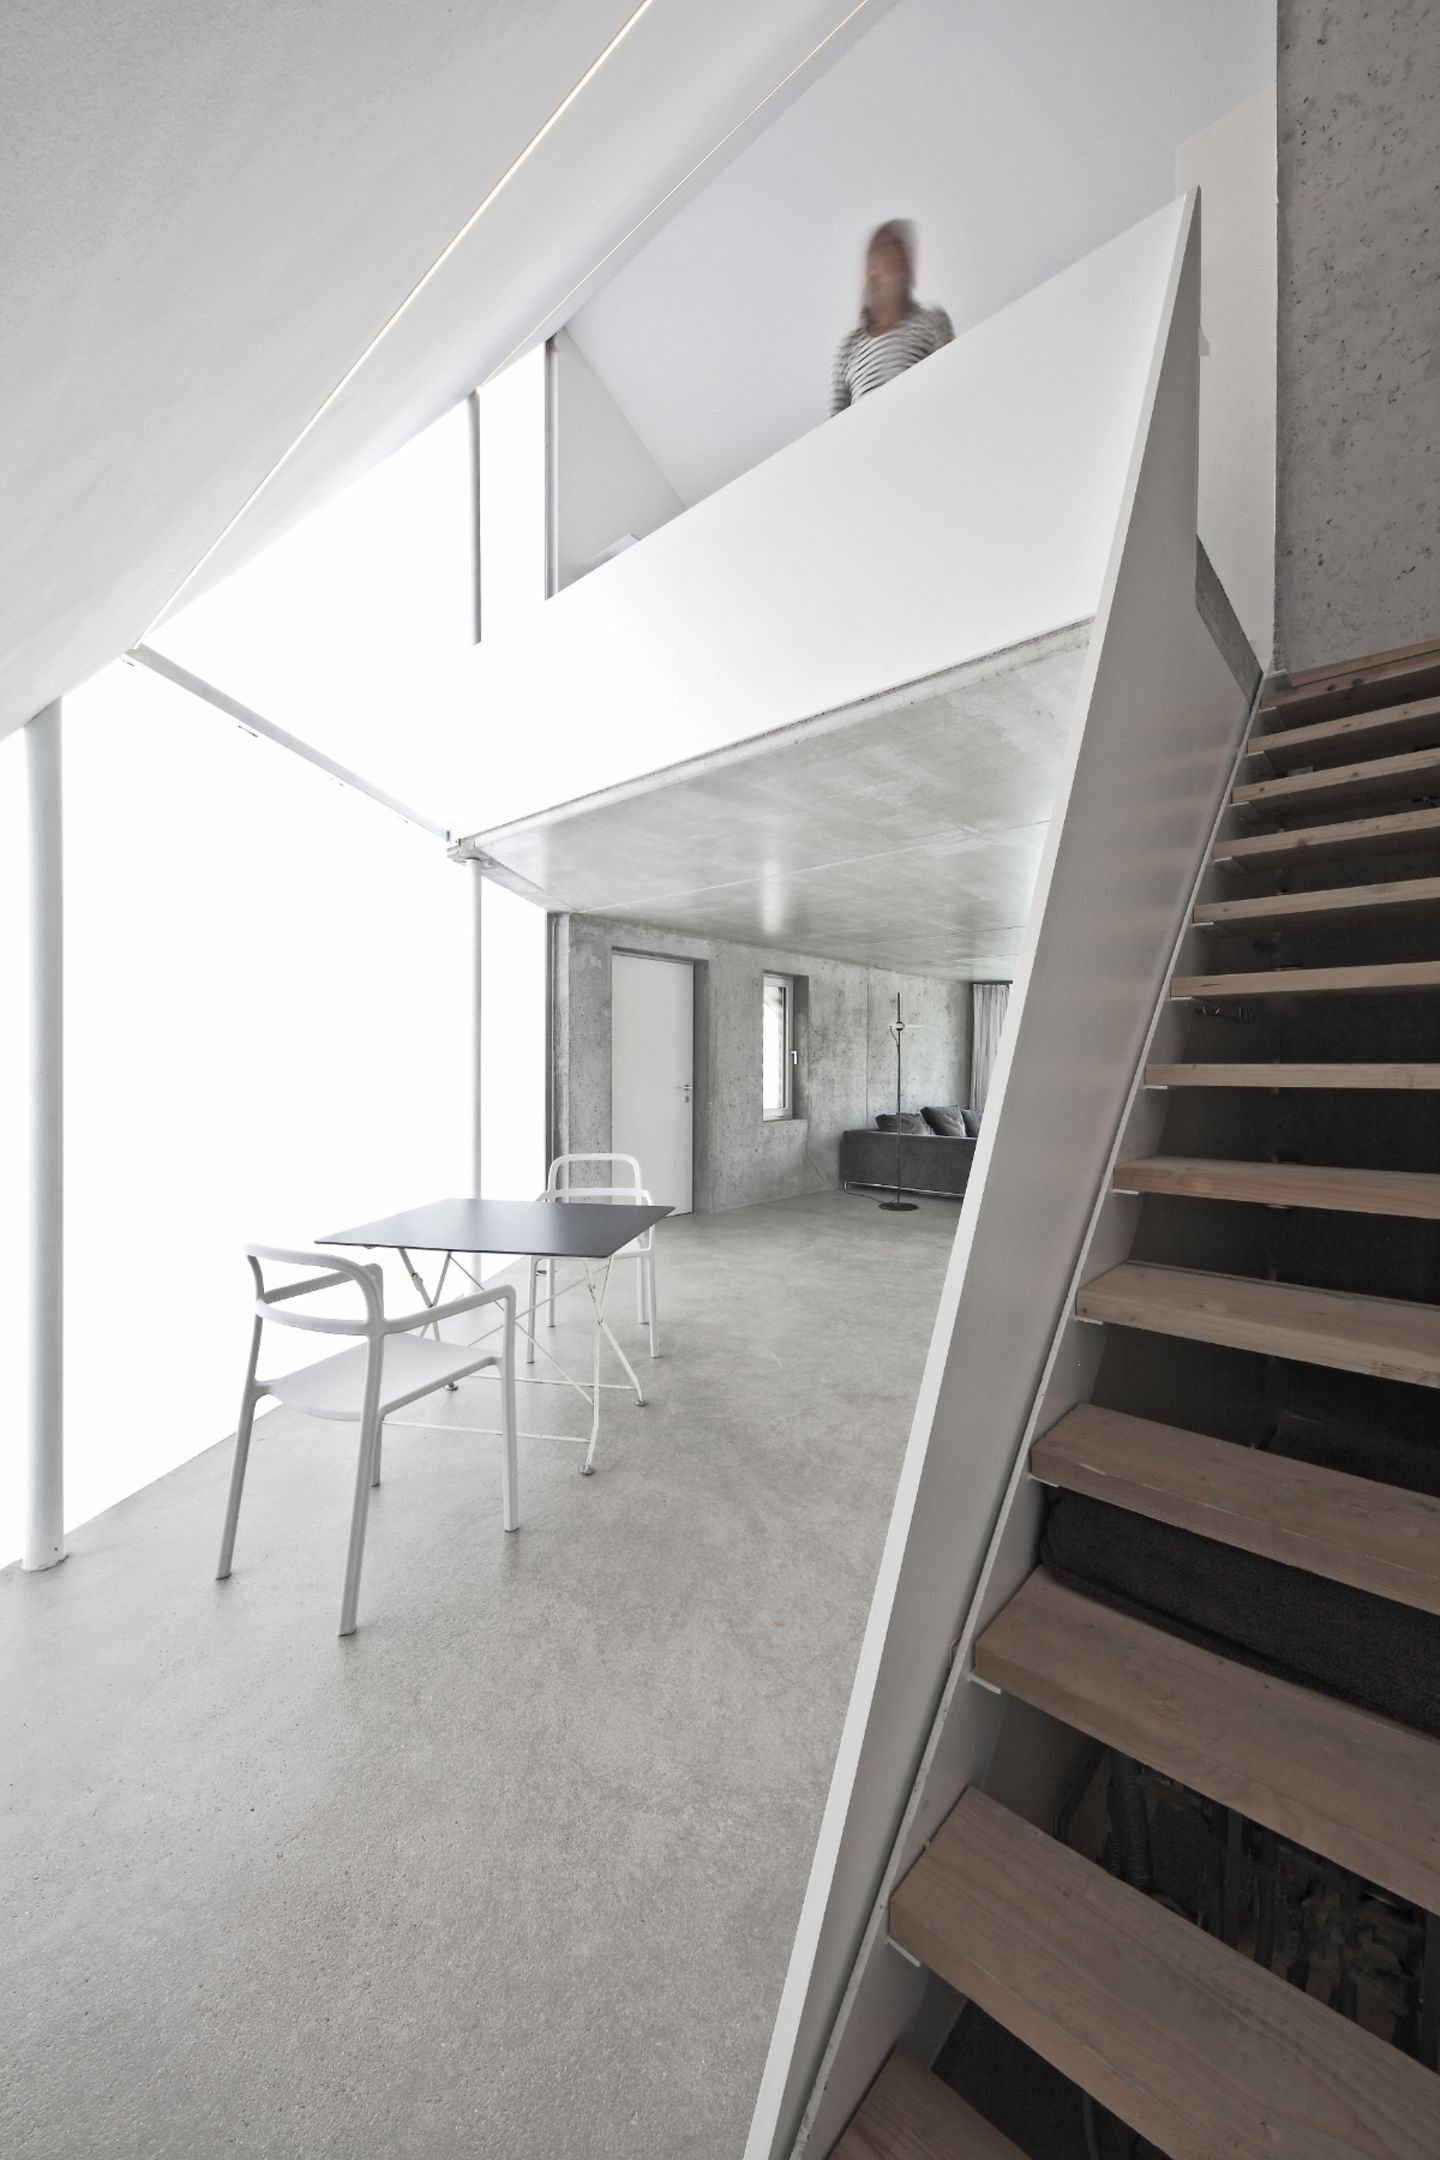 Offener Wohnraum mit steiler Treppe zur Galerie